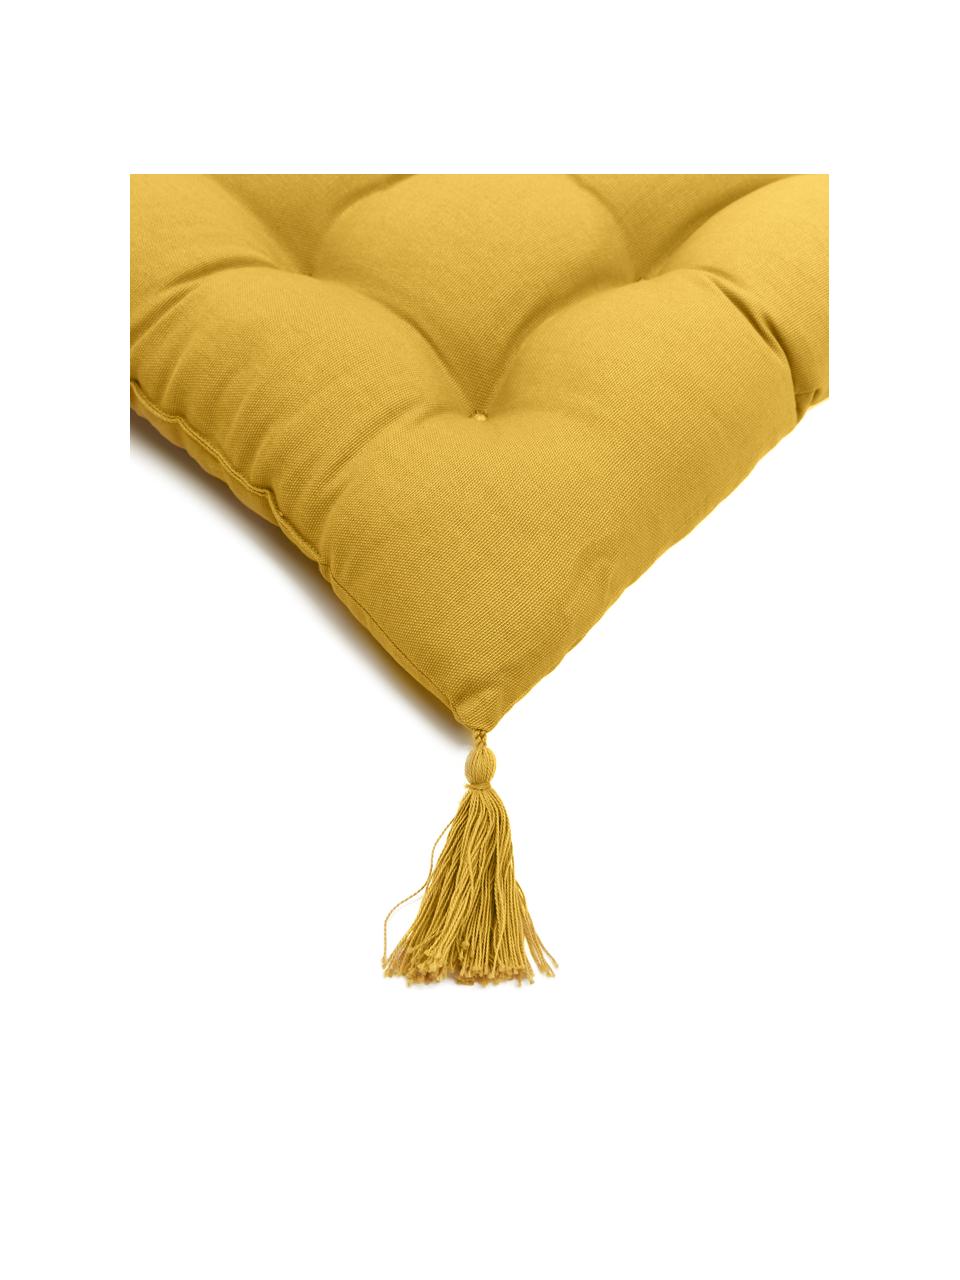 Cuscino sedia in cotone giallo con nappe Ava, Rivestimento: 100% cotone, Giallo, Larg. 40 x Lung. 40 cm